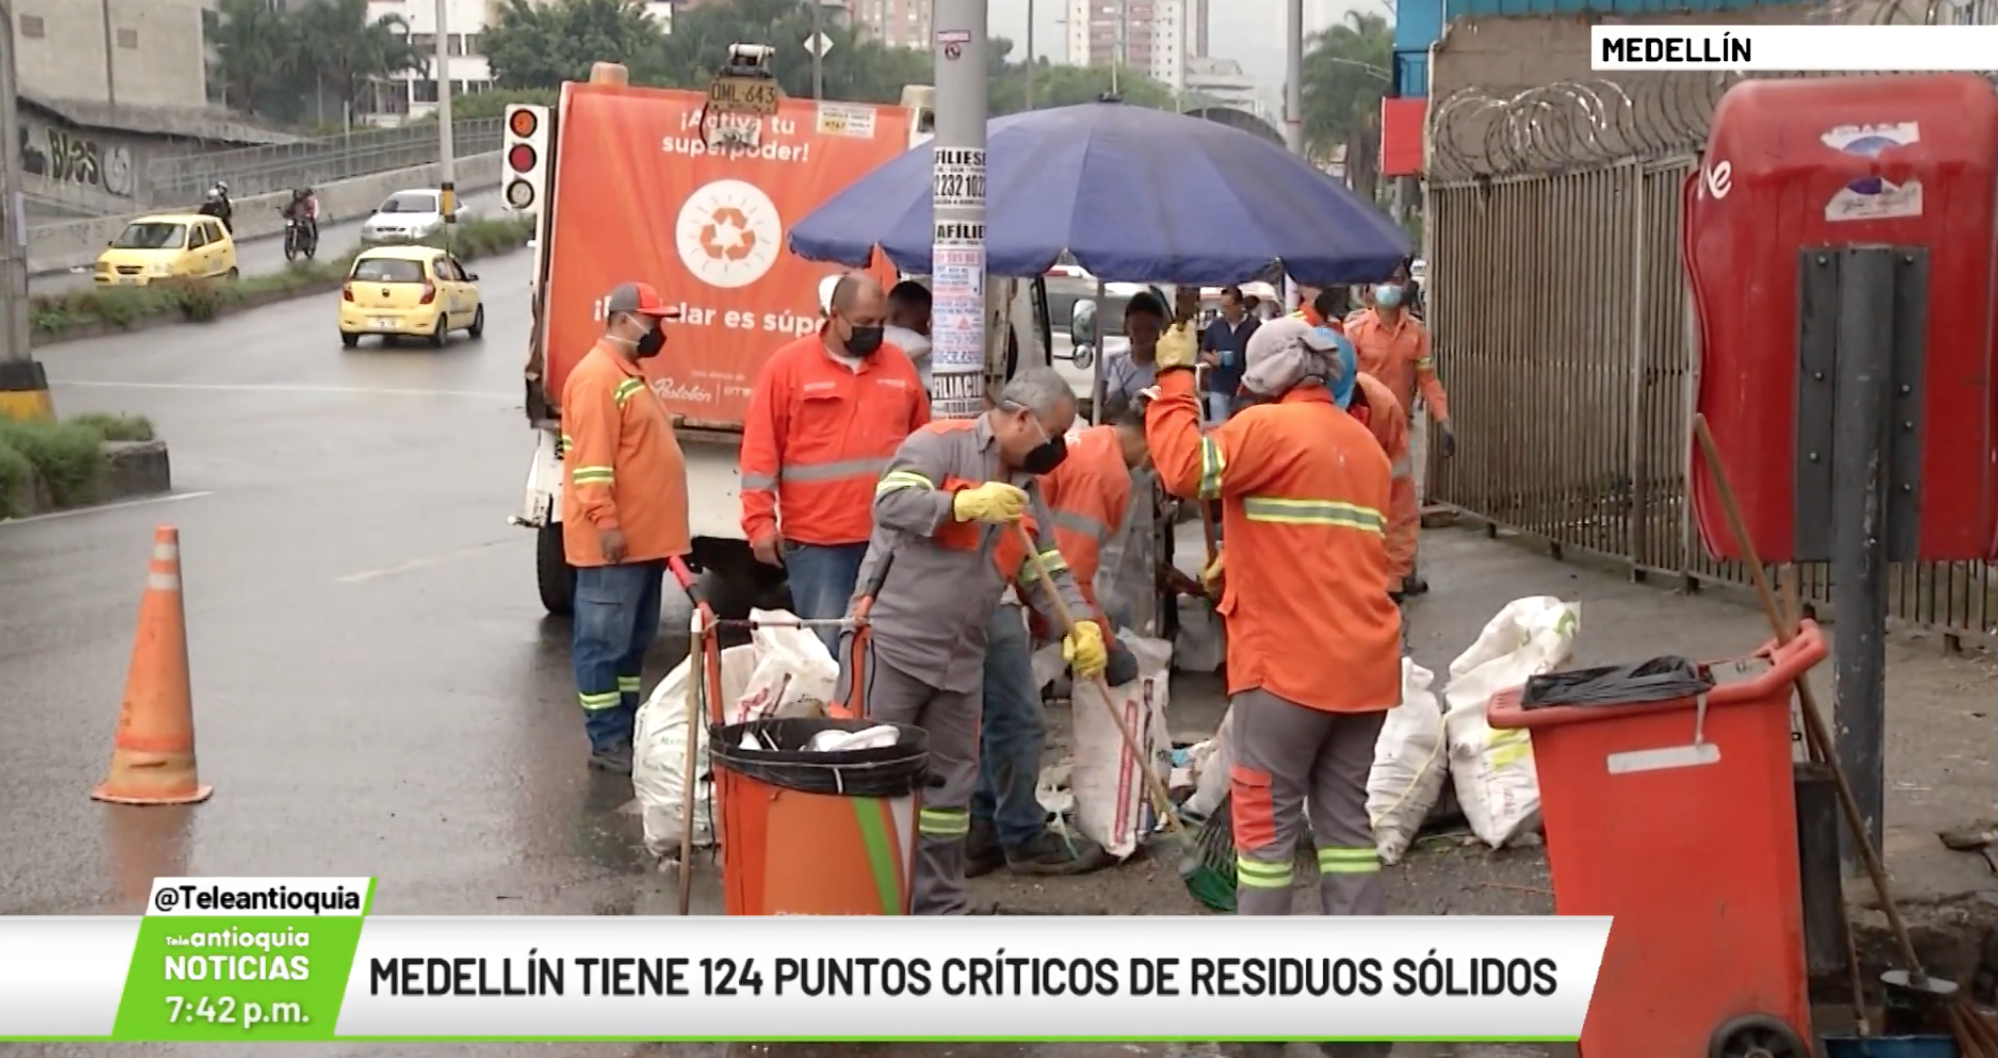 Medellín tiene 124 puntos críticos de residuos sólidos